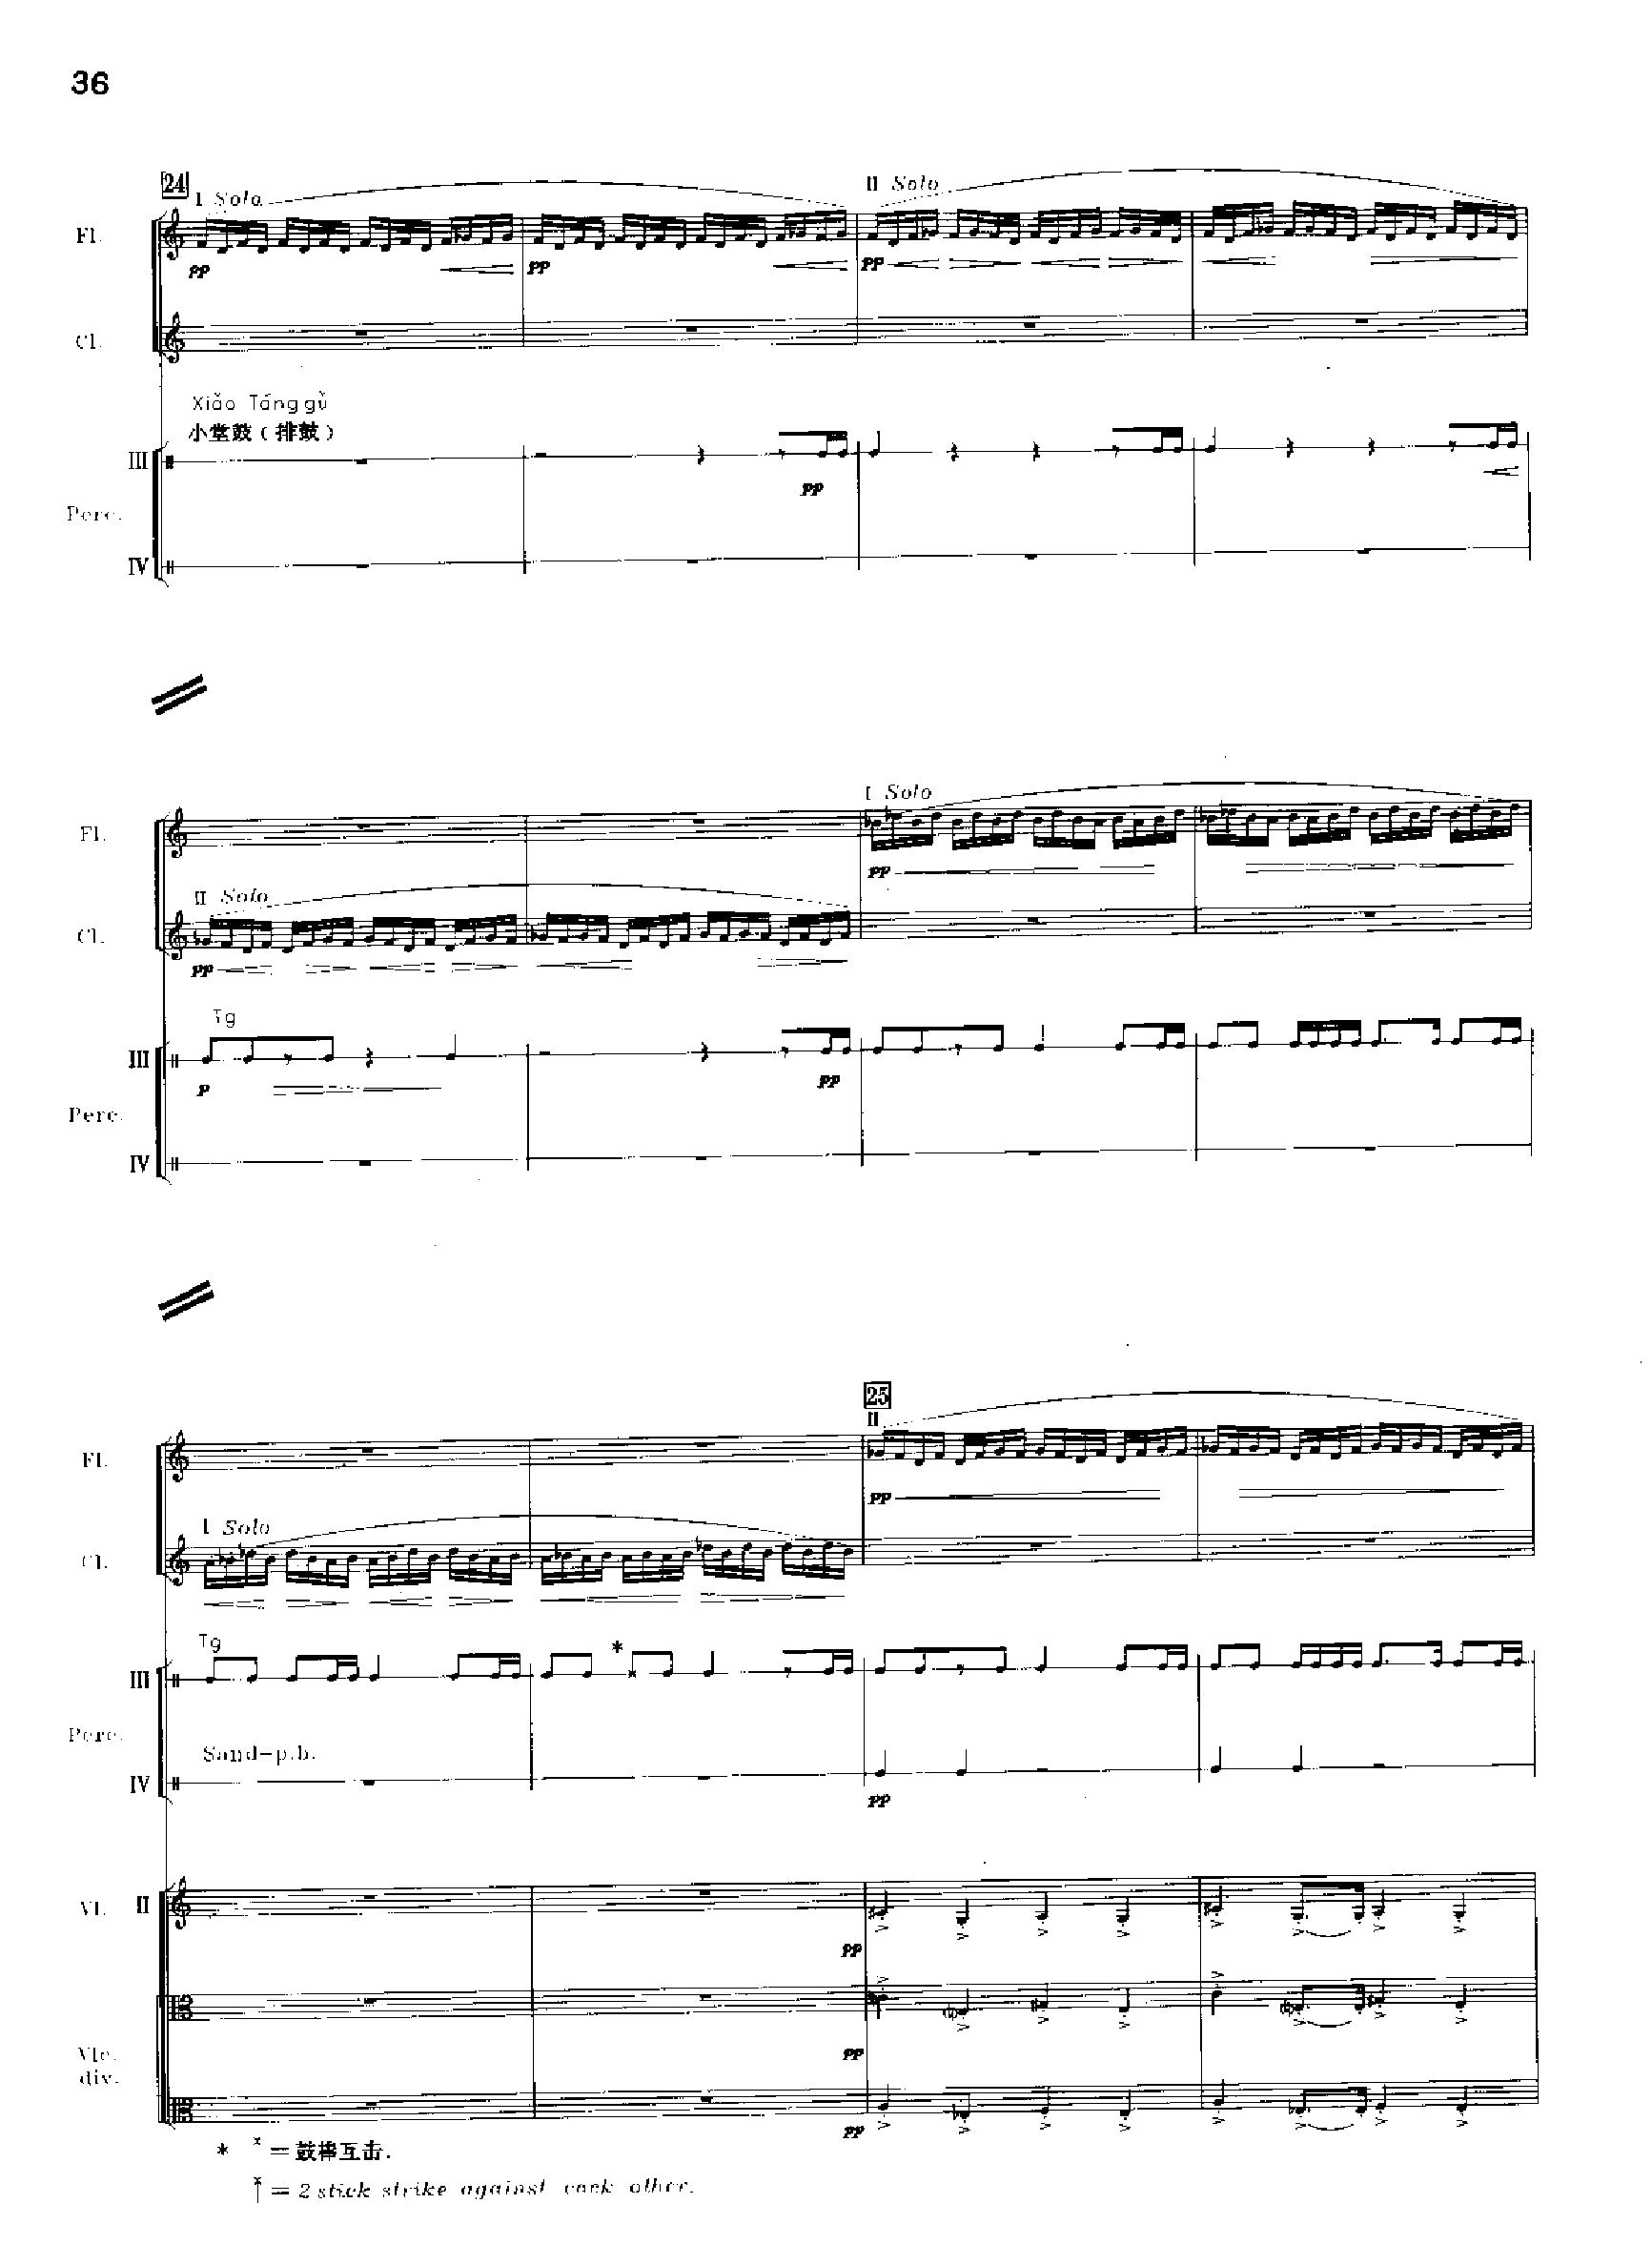 交响诗百年沧桑作品41号 乐队类 管弦乐总谱总谱（图36）